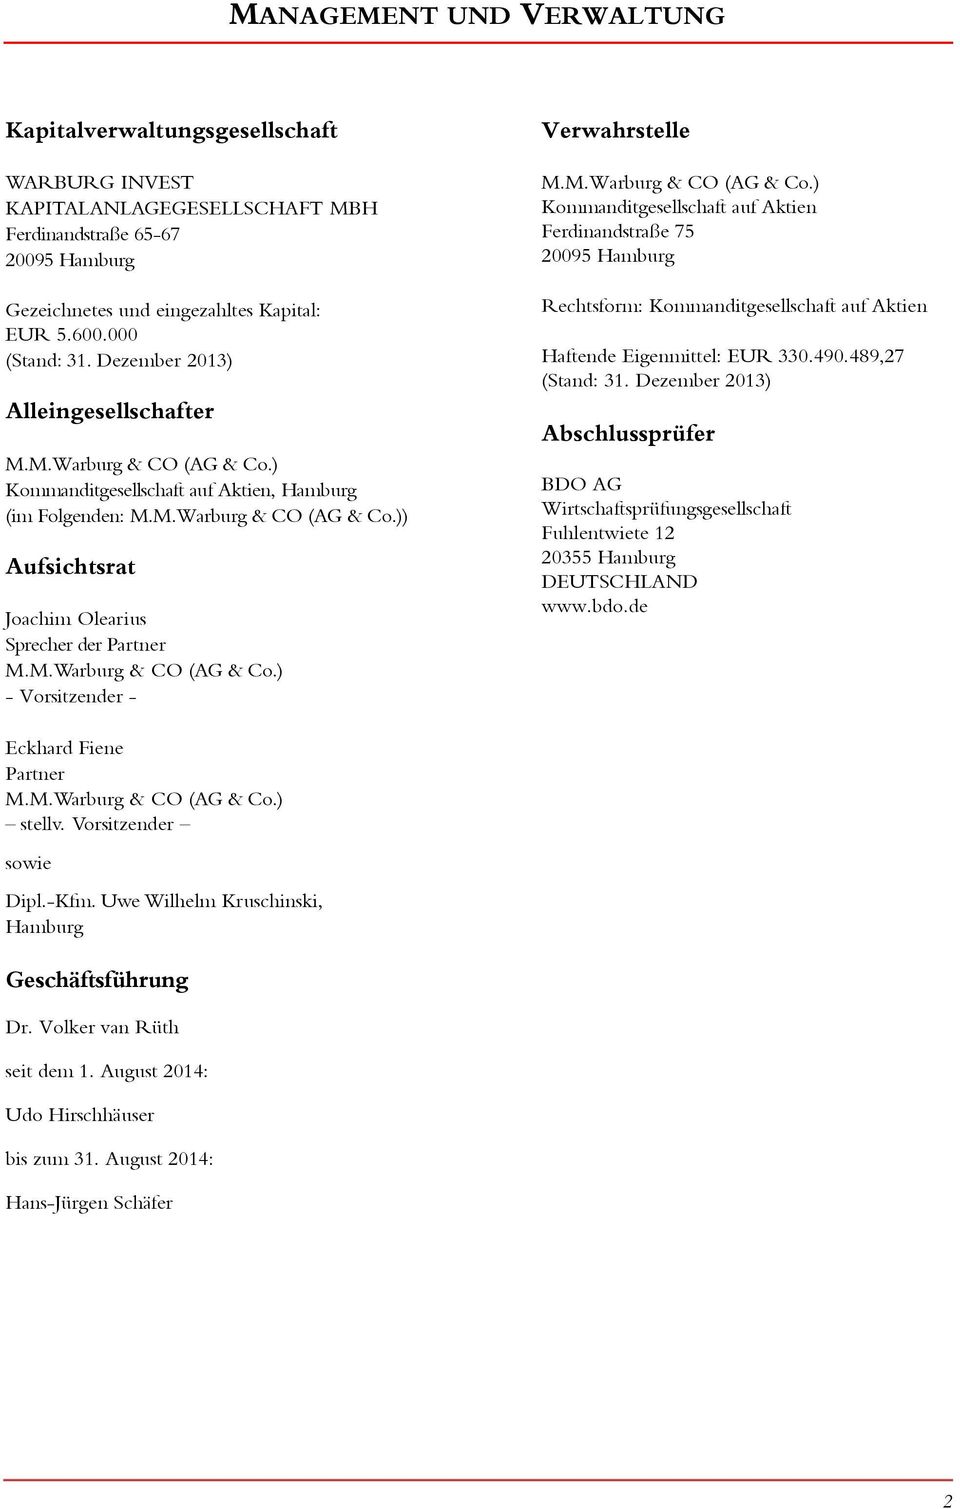 M.Warburg & CO (AG & Co.) - Vorsitzender - Verwahrstelle M.M.Warburg & CO (AG & Co.) Kommanditgesellschaft auf Aktien Ferdinandstraße 75 295 Hamburg Rechtsform: Kommanditgesellschaft auf Aktien Haftende Eigenmittel: 33.